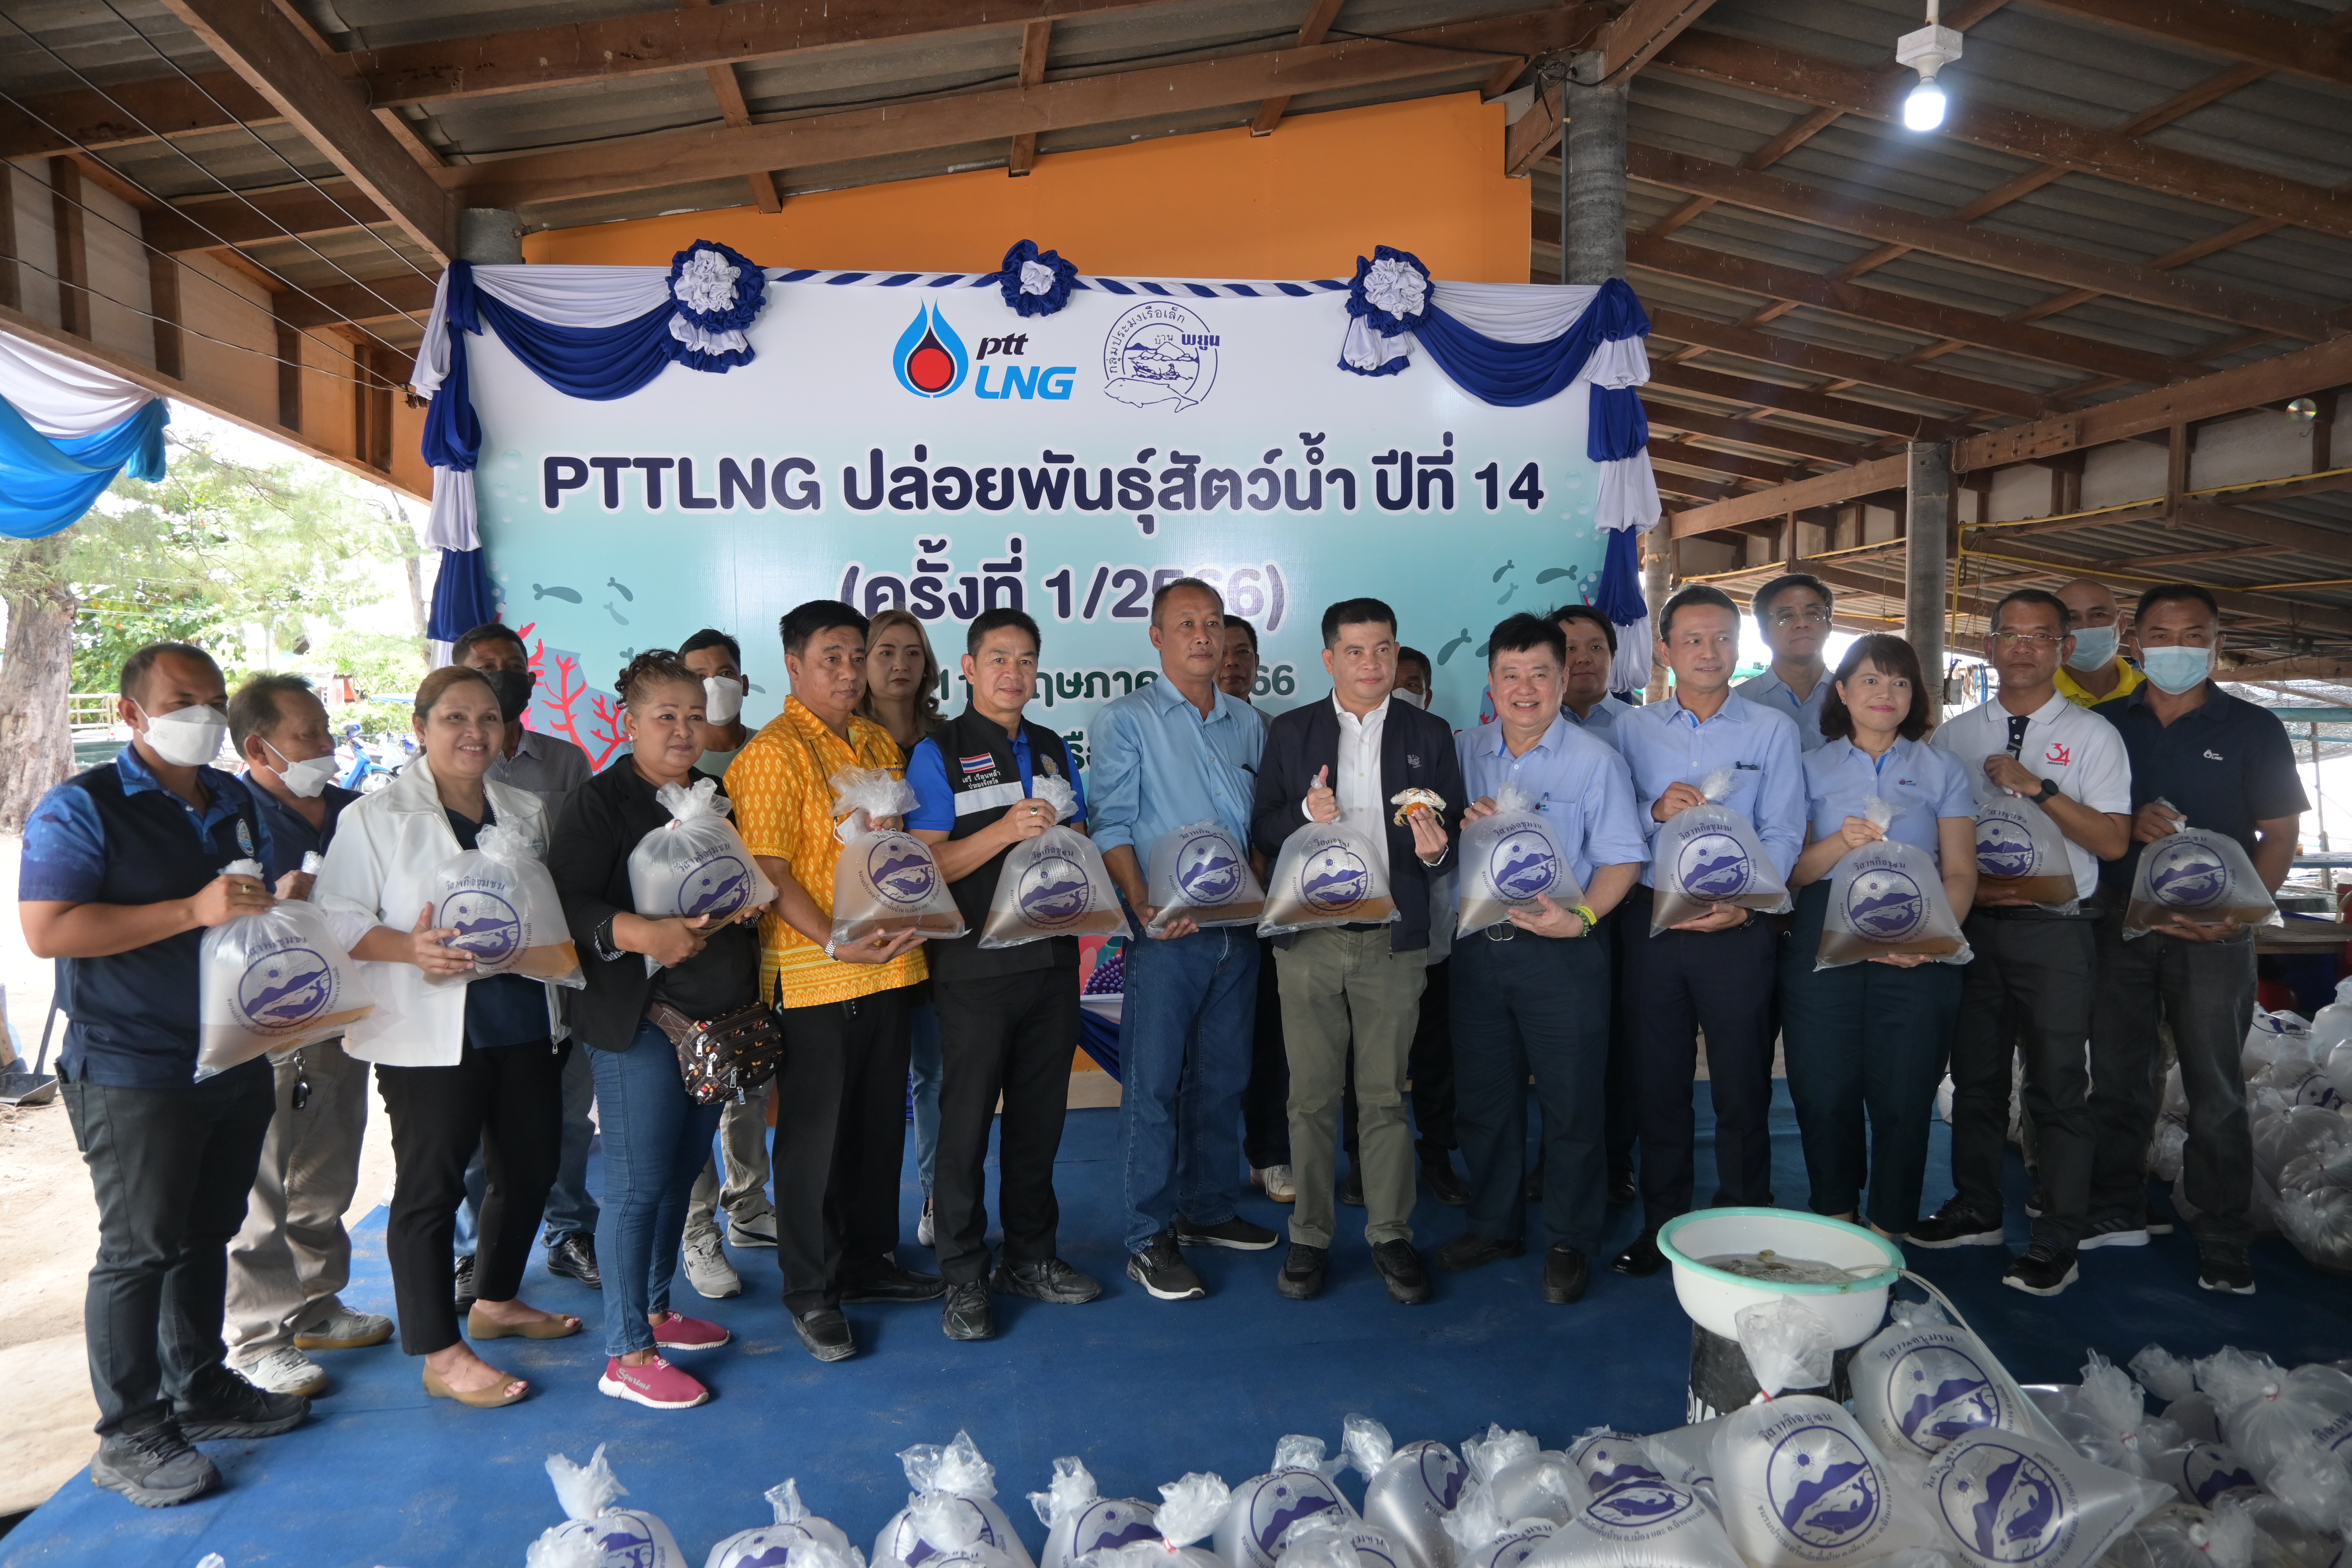 สทร. ร่วมโครงการ “PTT LNG ปล่อยพันธุ์สัตว์น้ำ” ปีที่ 14